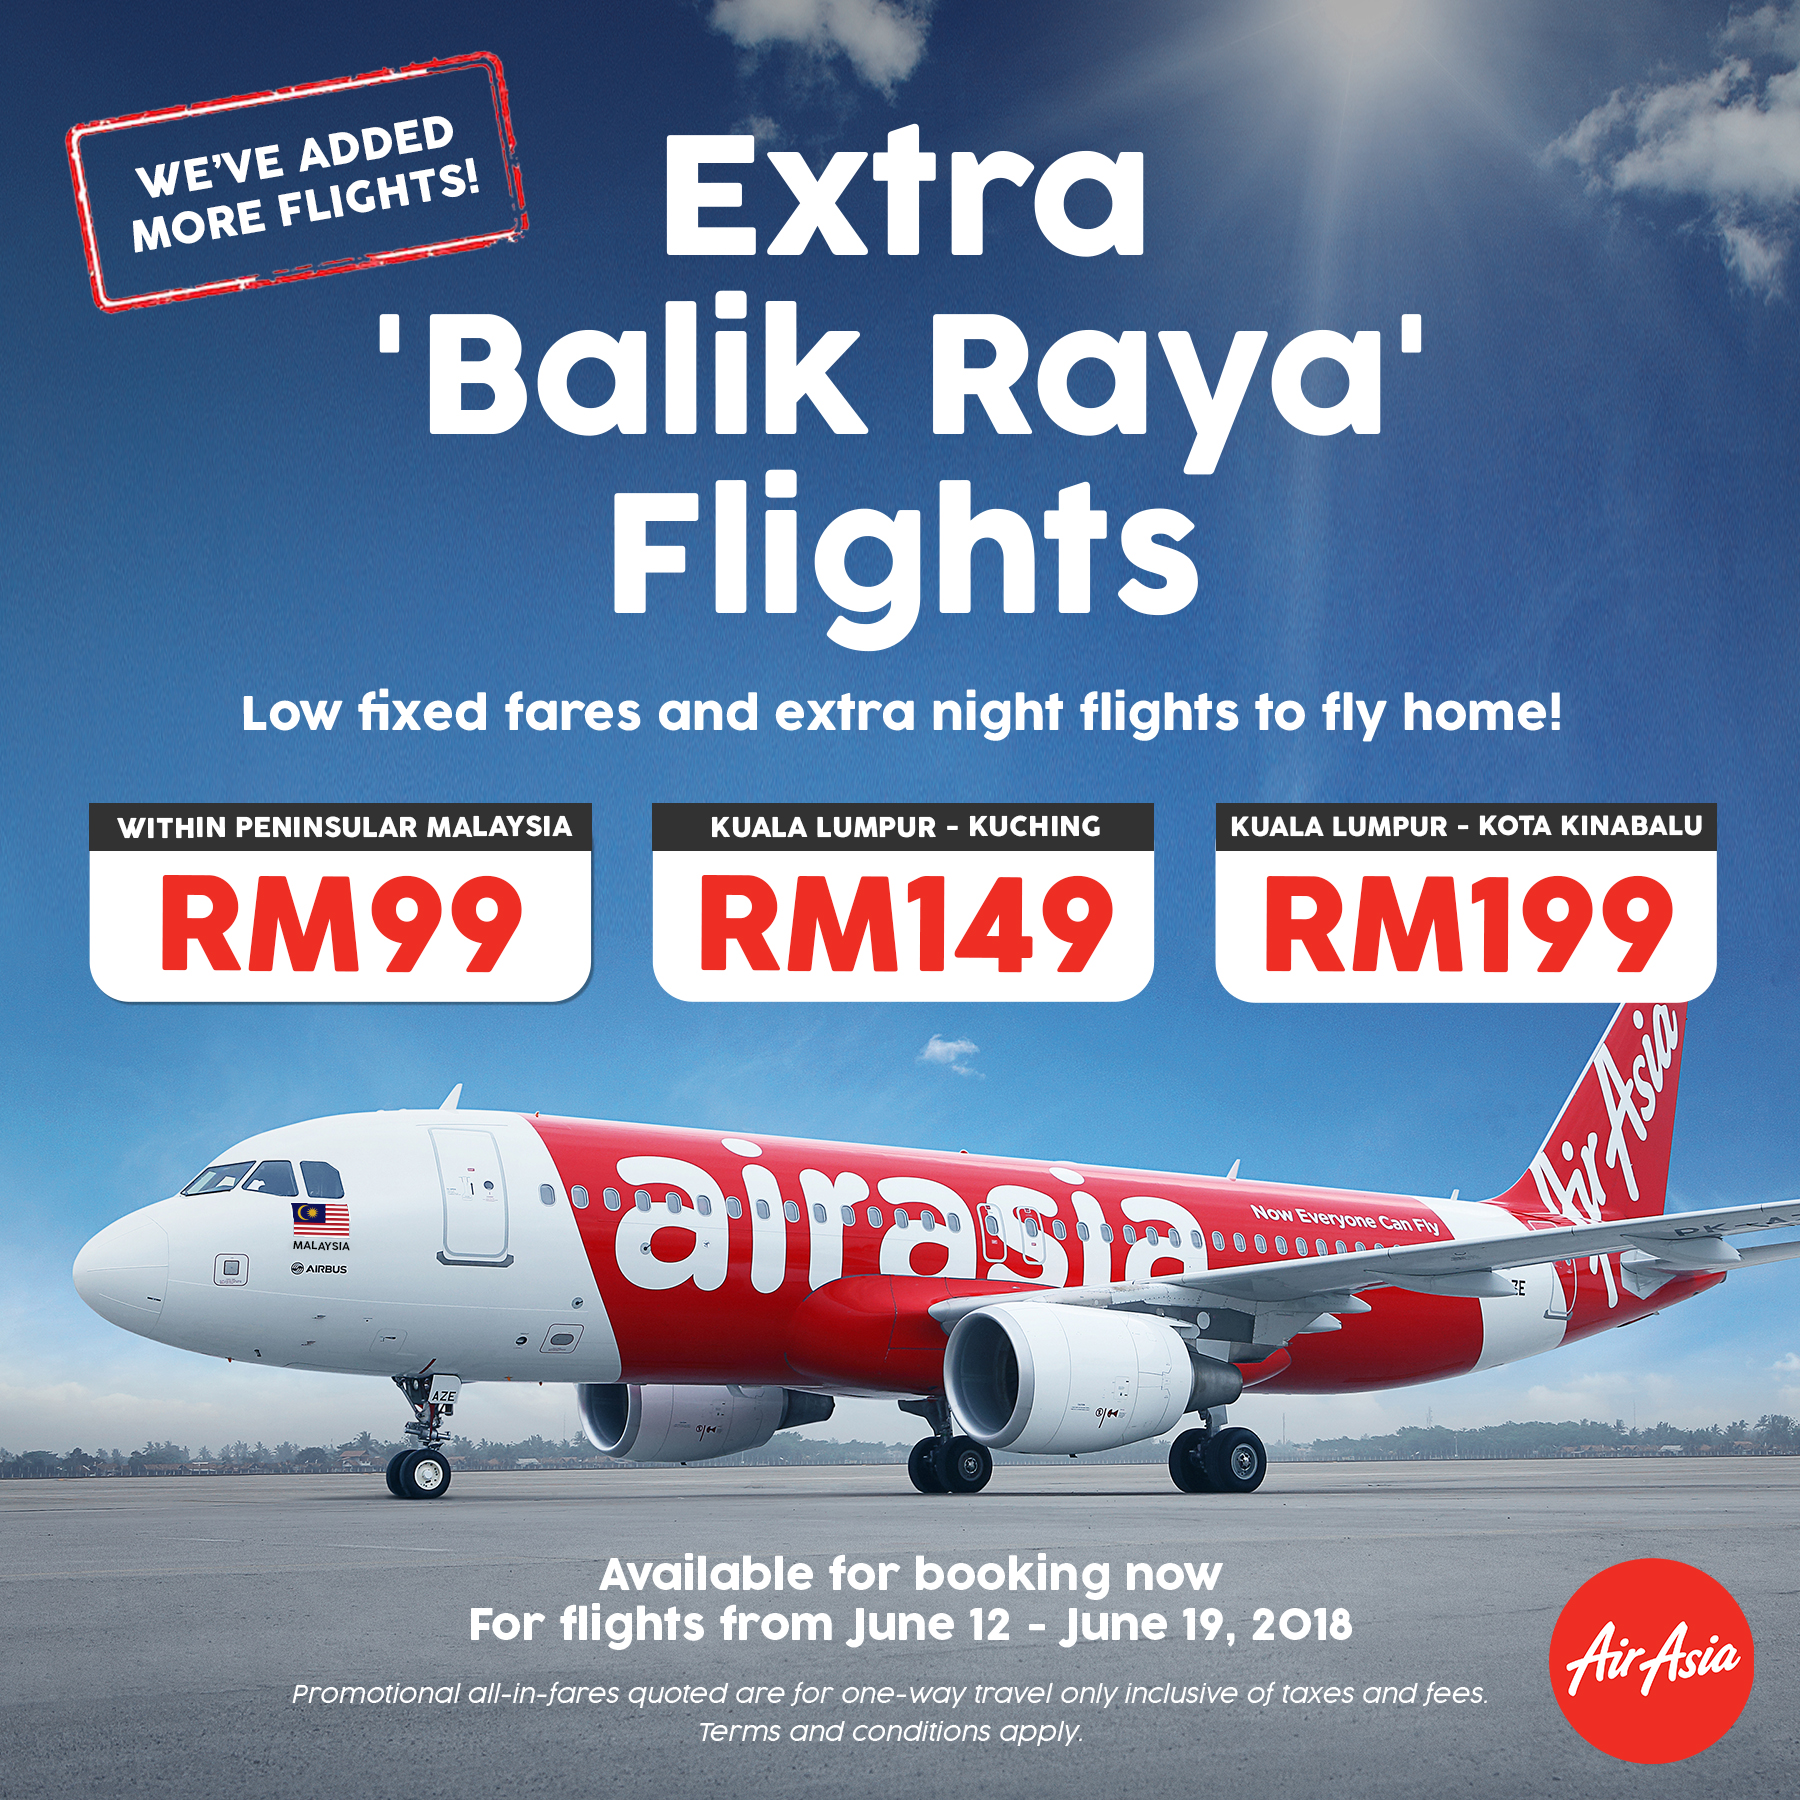 Airasia Balik Raya Low Fixed Fares To Sabah Now Available Airasia Newsroom